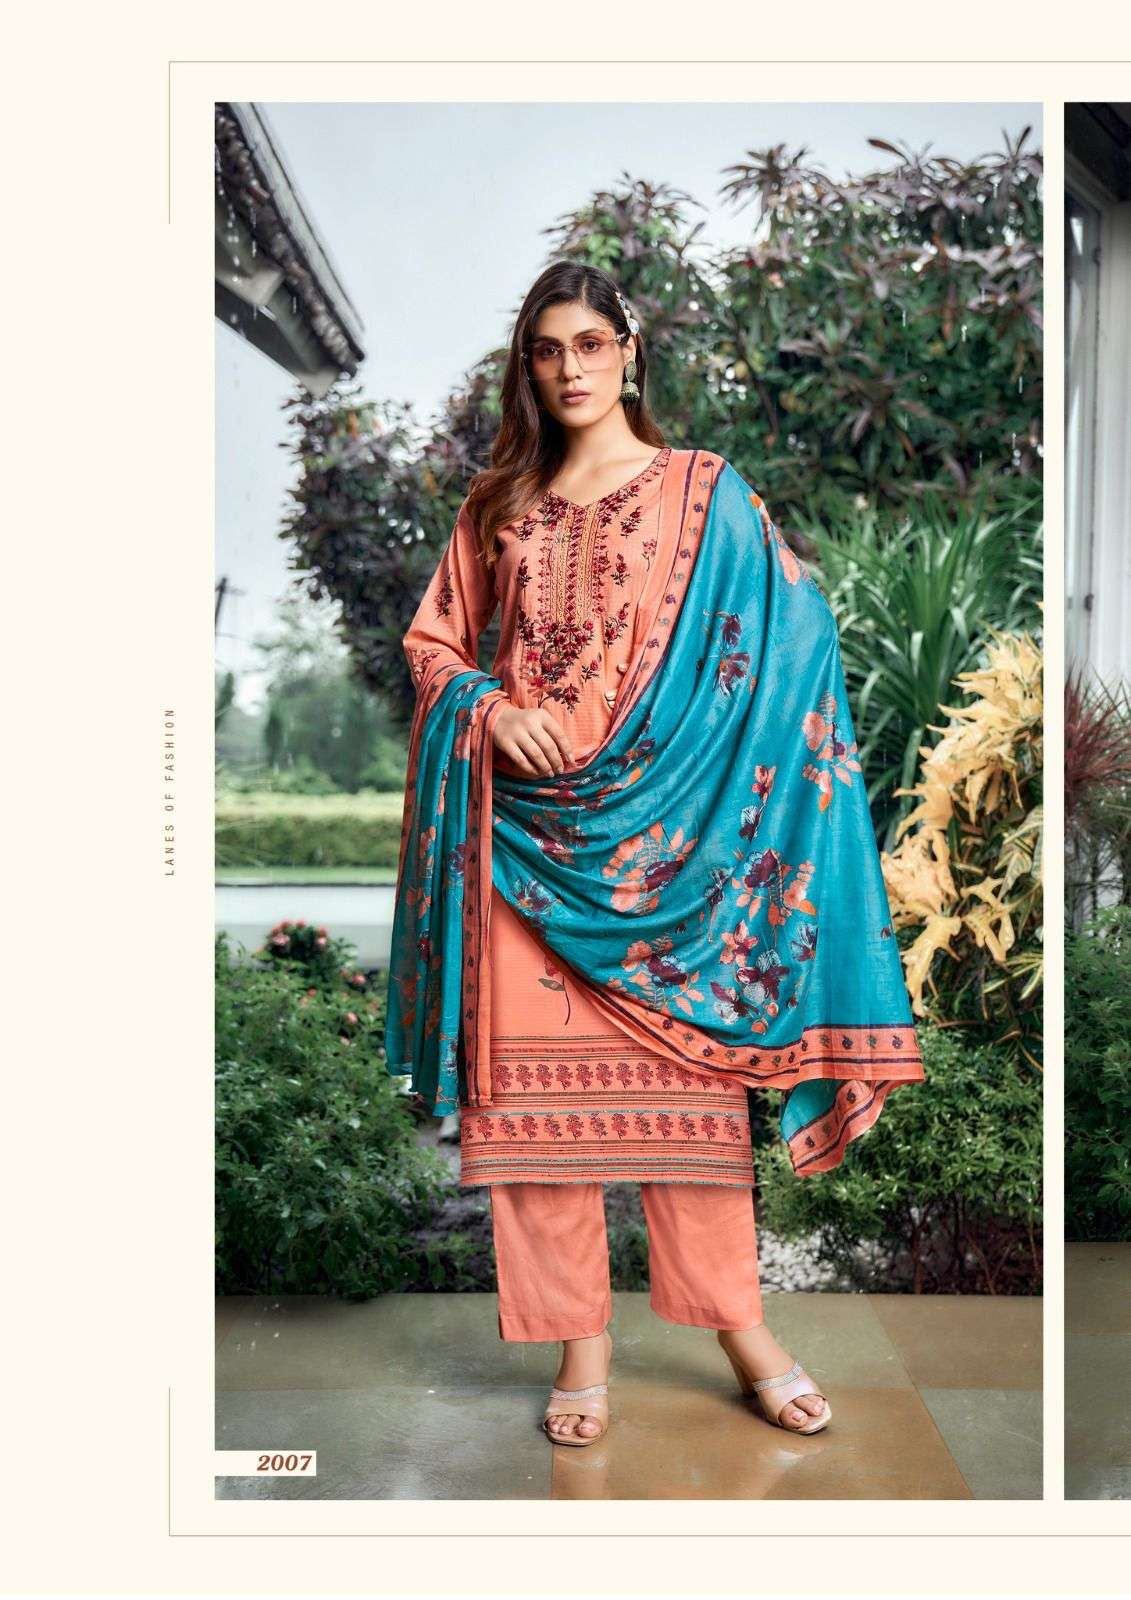 yashika bella vol-2 designer wedding pakistani salwar kameez wholesaler surat gujarat